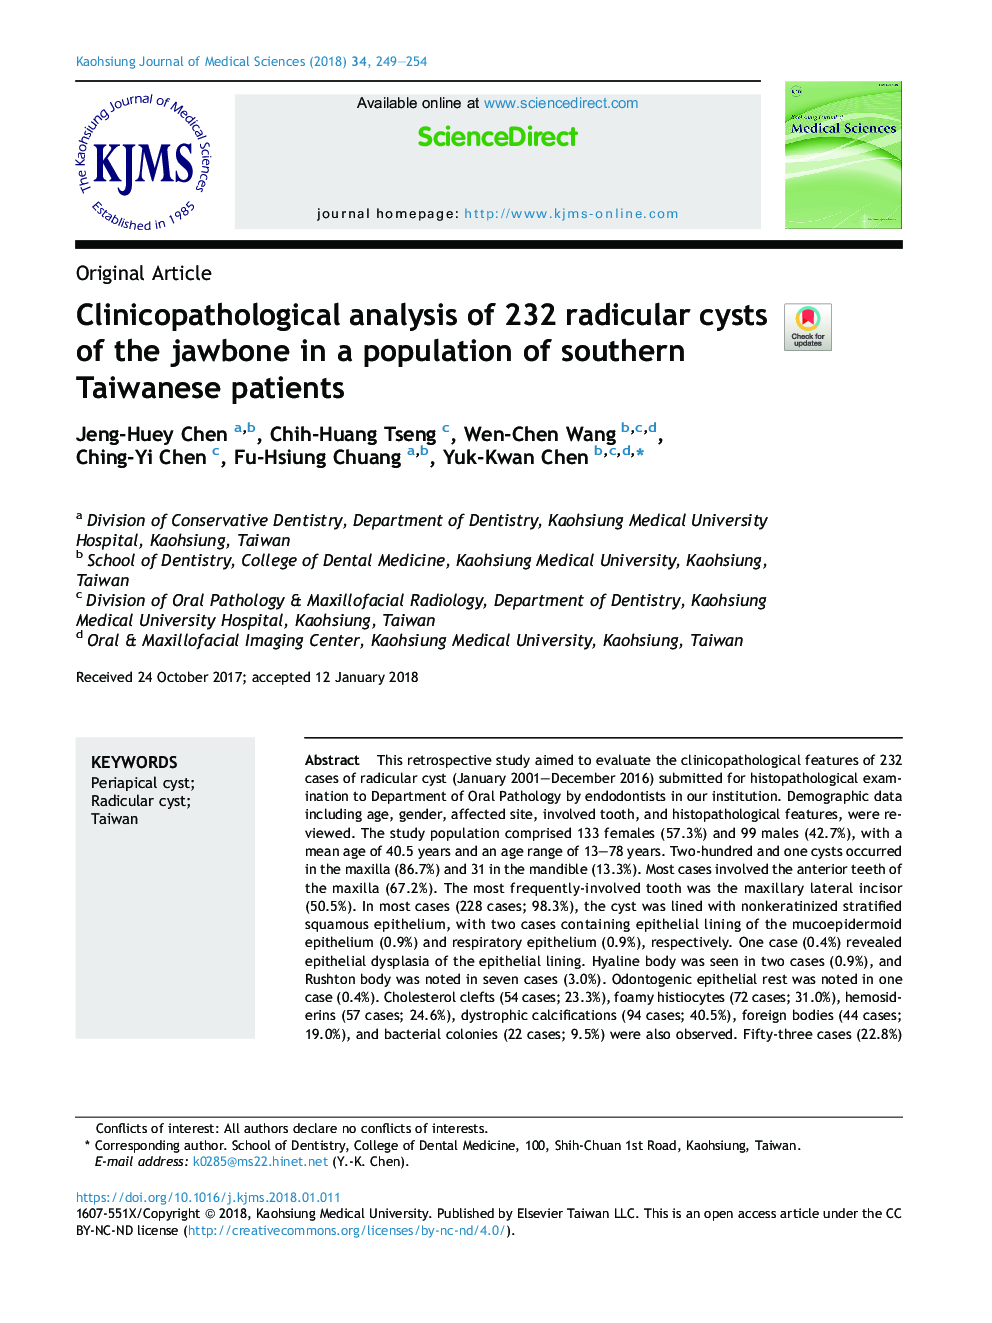 تحلیل کلینیکوپاتولوژیک 232 کیست رادیکولار جاکوبون در جمعیت بیماران جنوبی تایوانی 